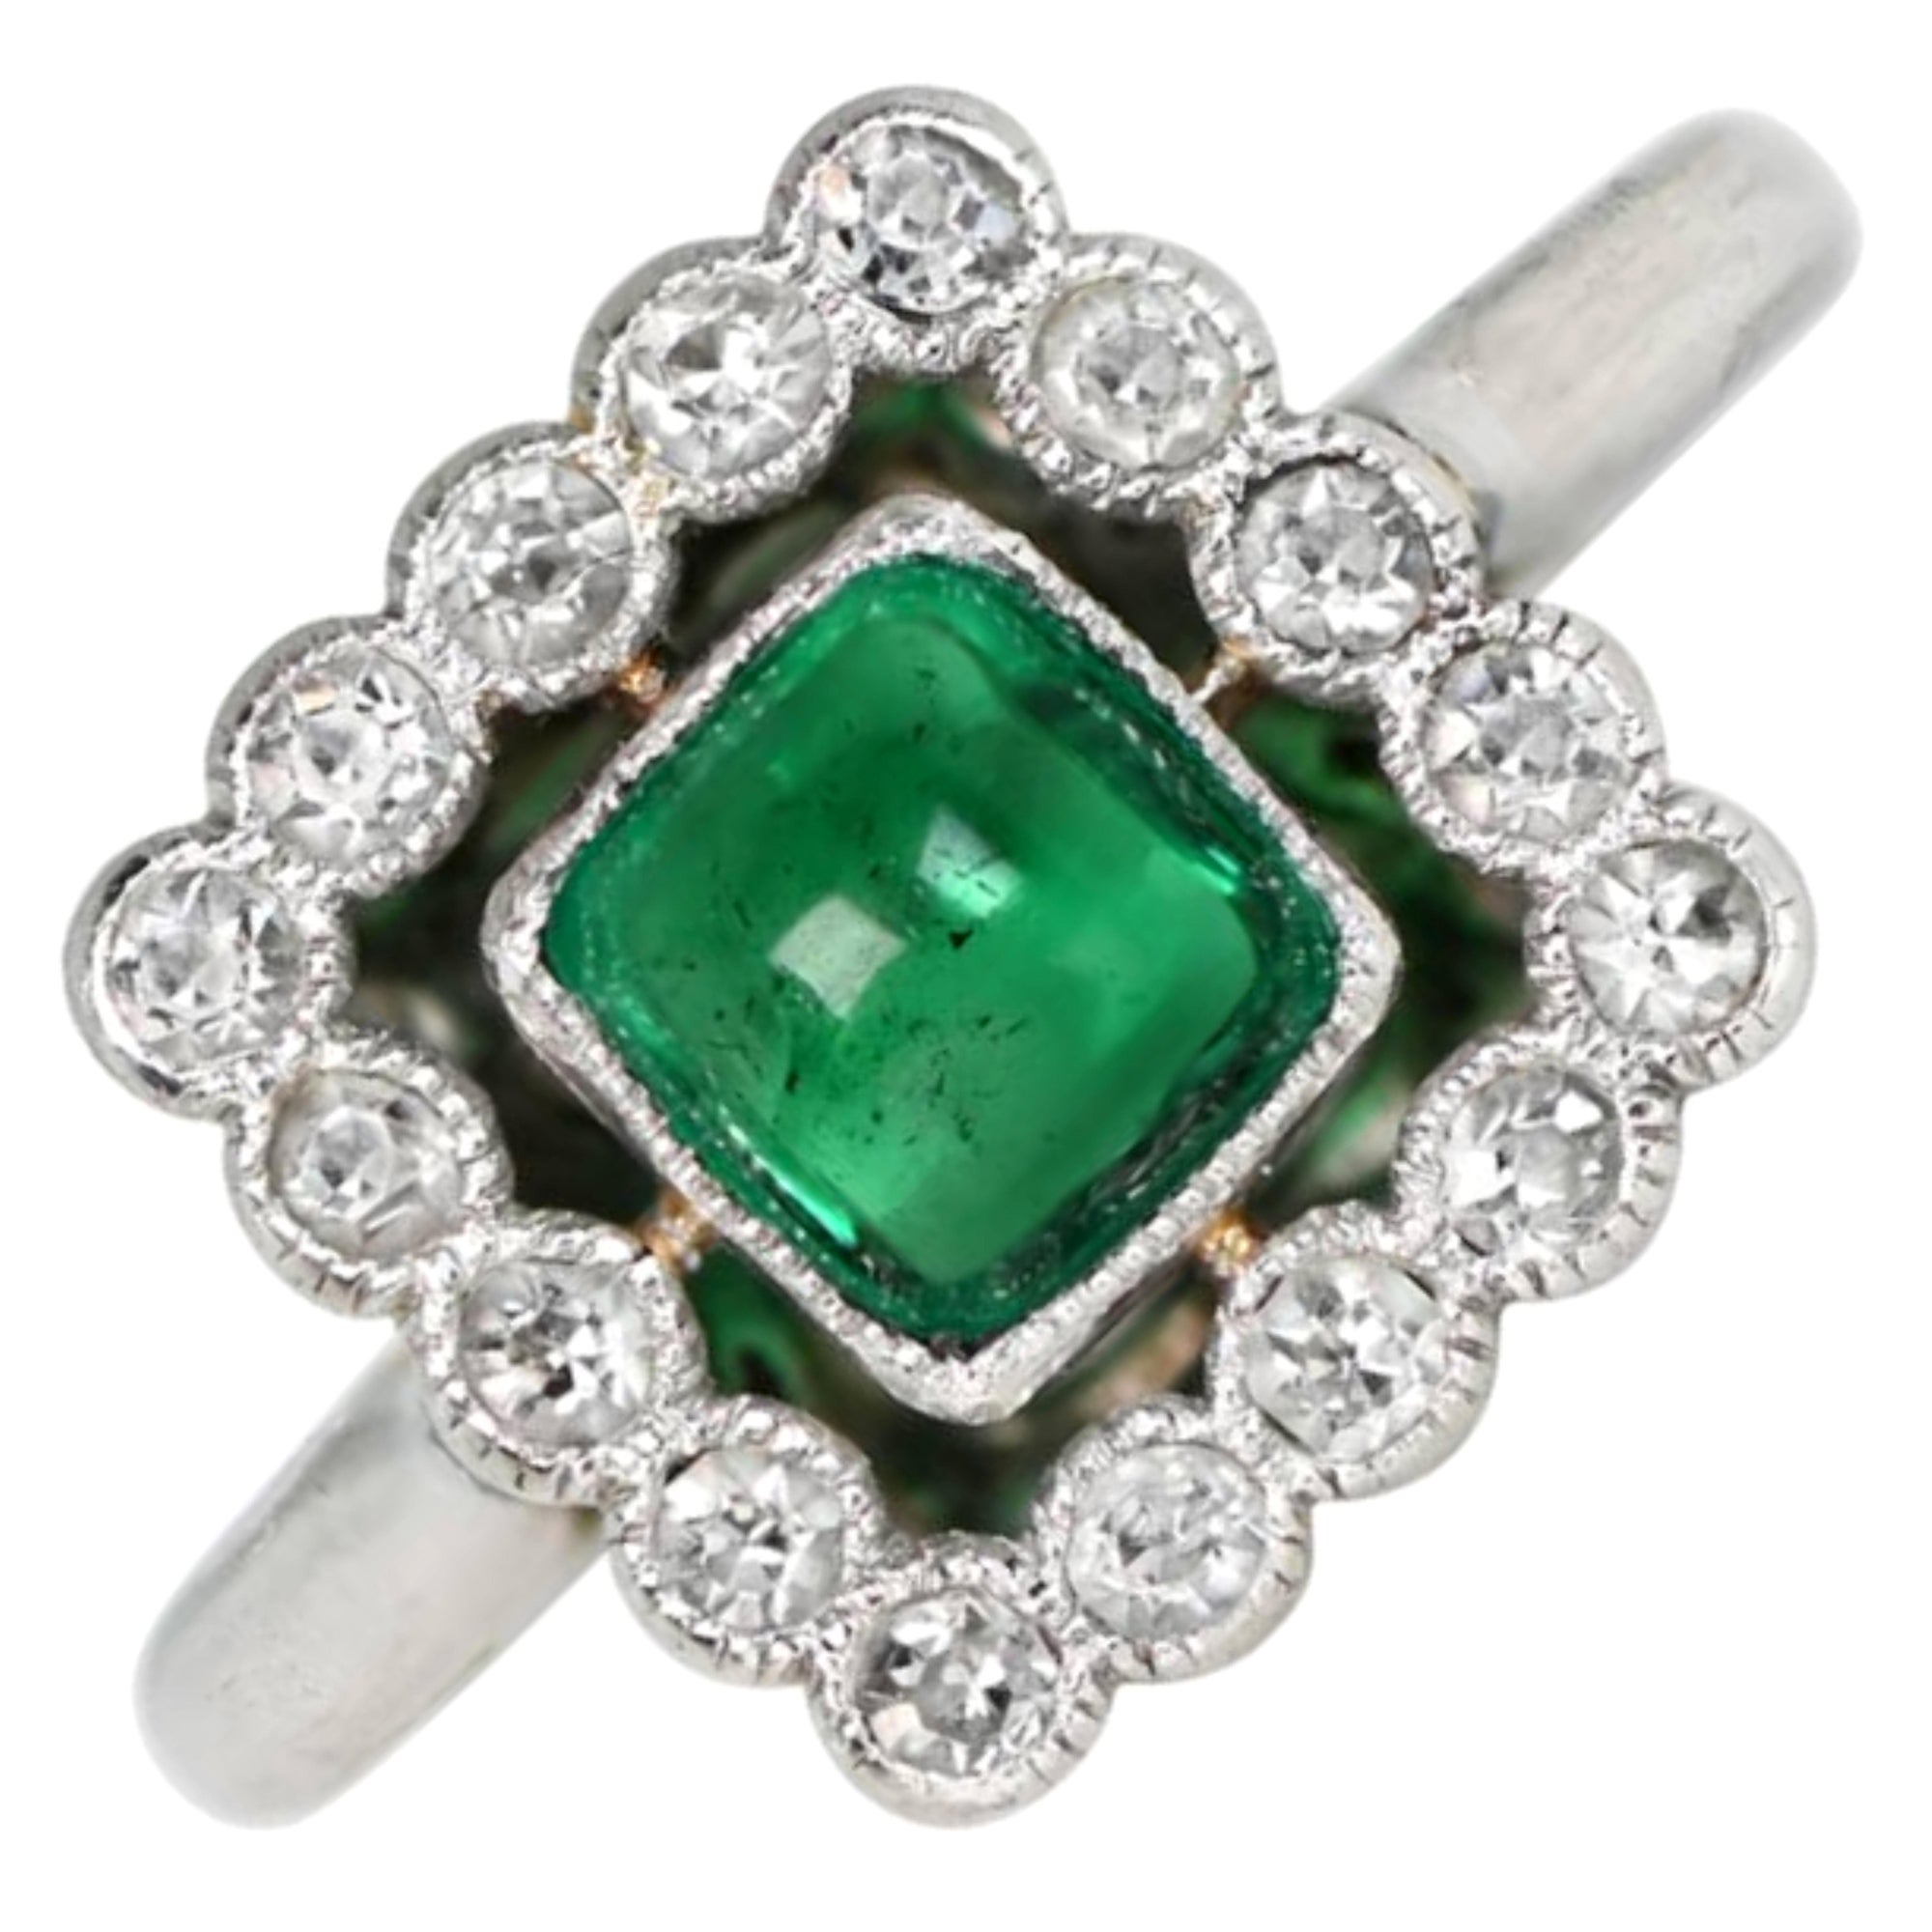 Antique 0.75ct Sugarloaf Cut Emerald Engagement Ring, Diamond Halo, Platinum